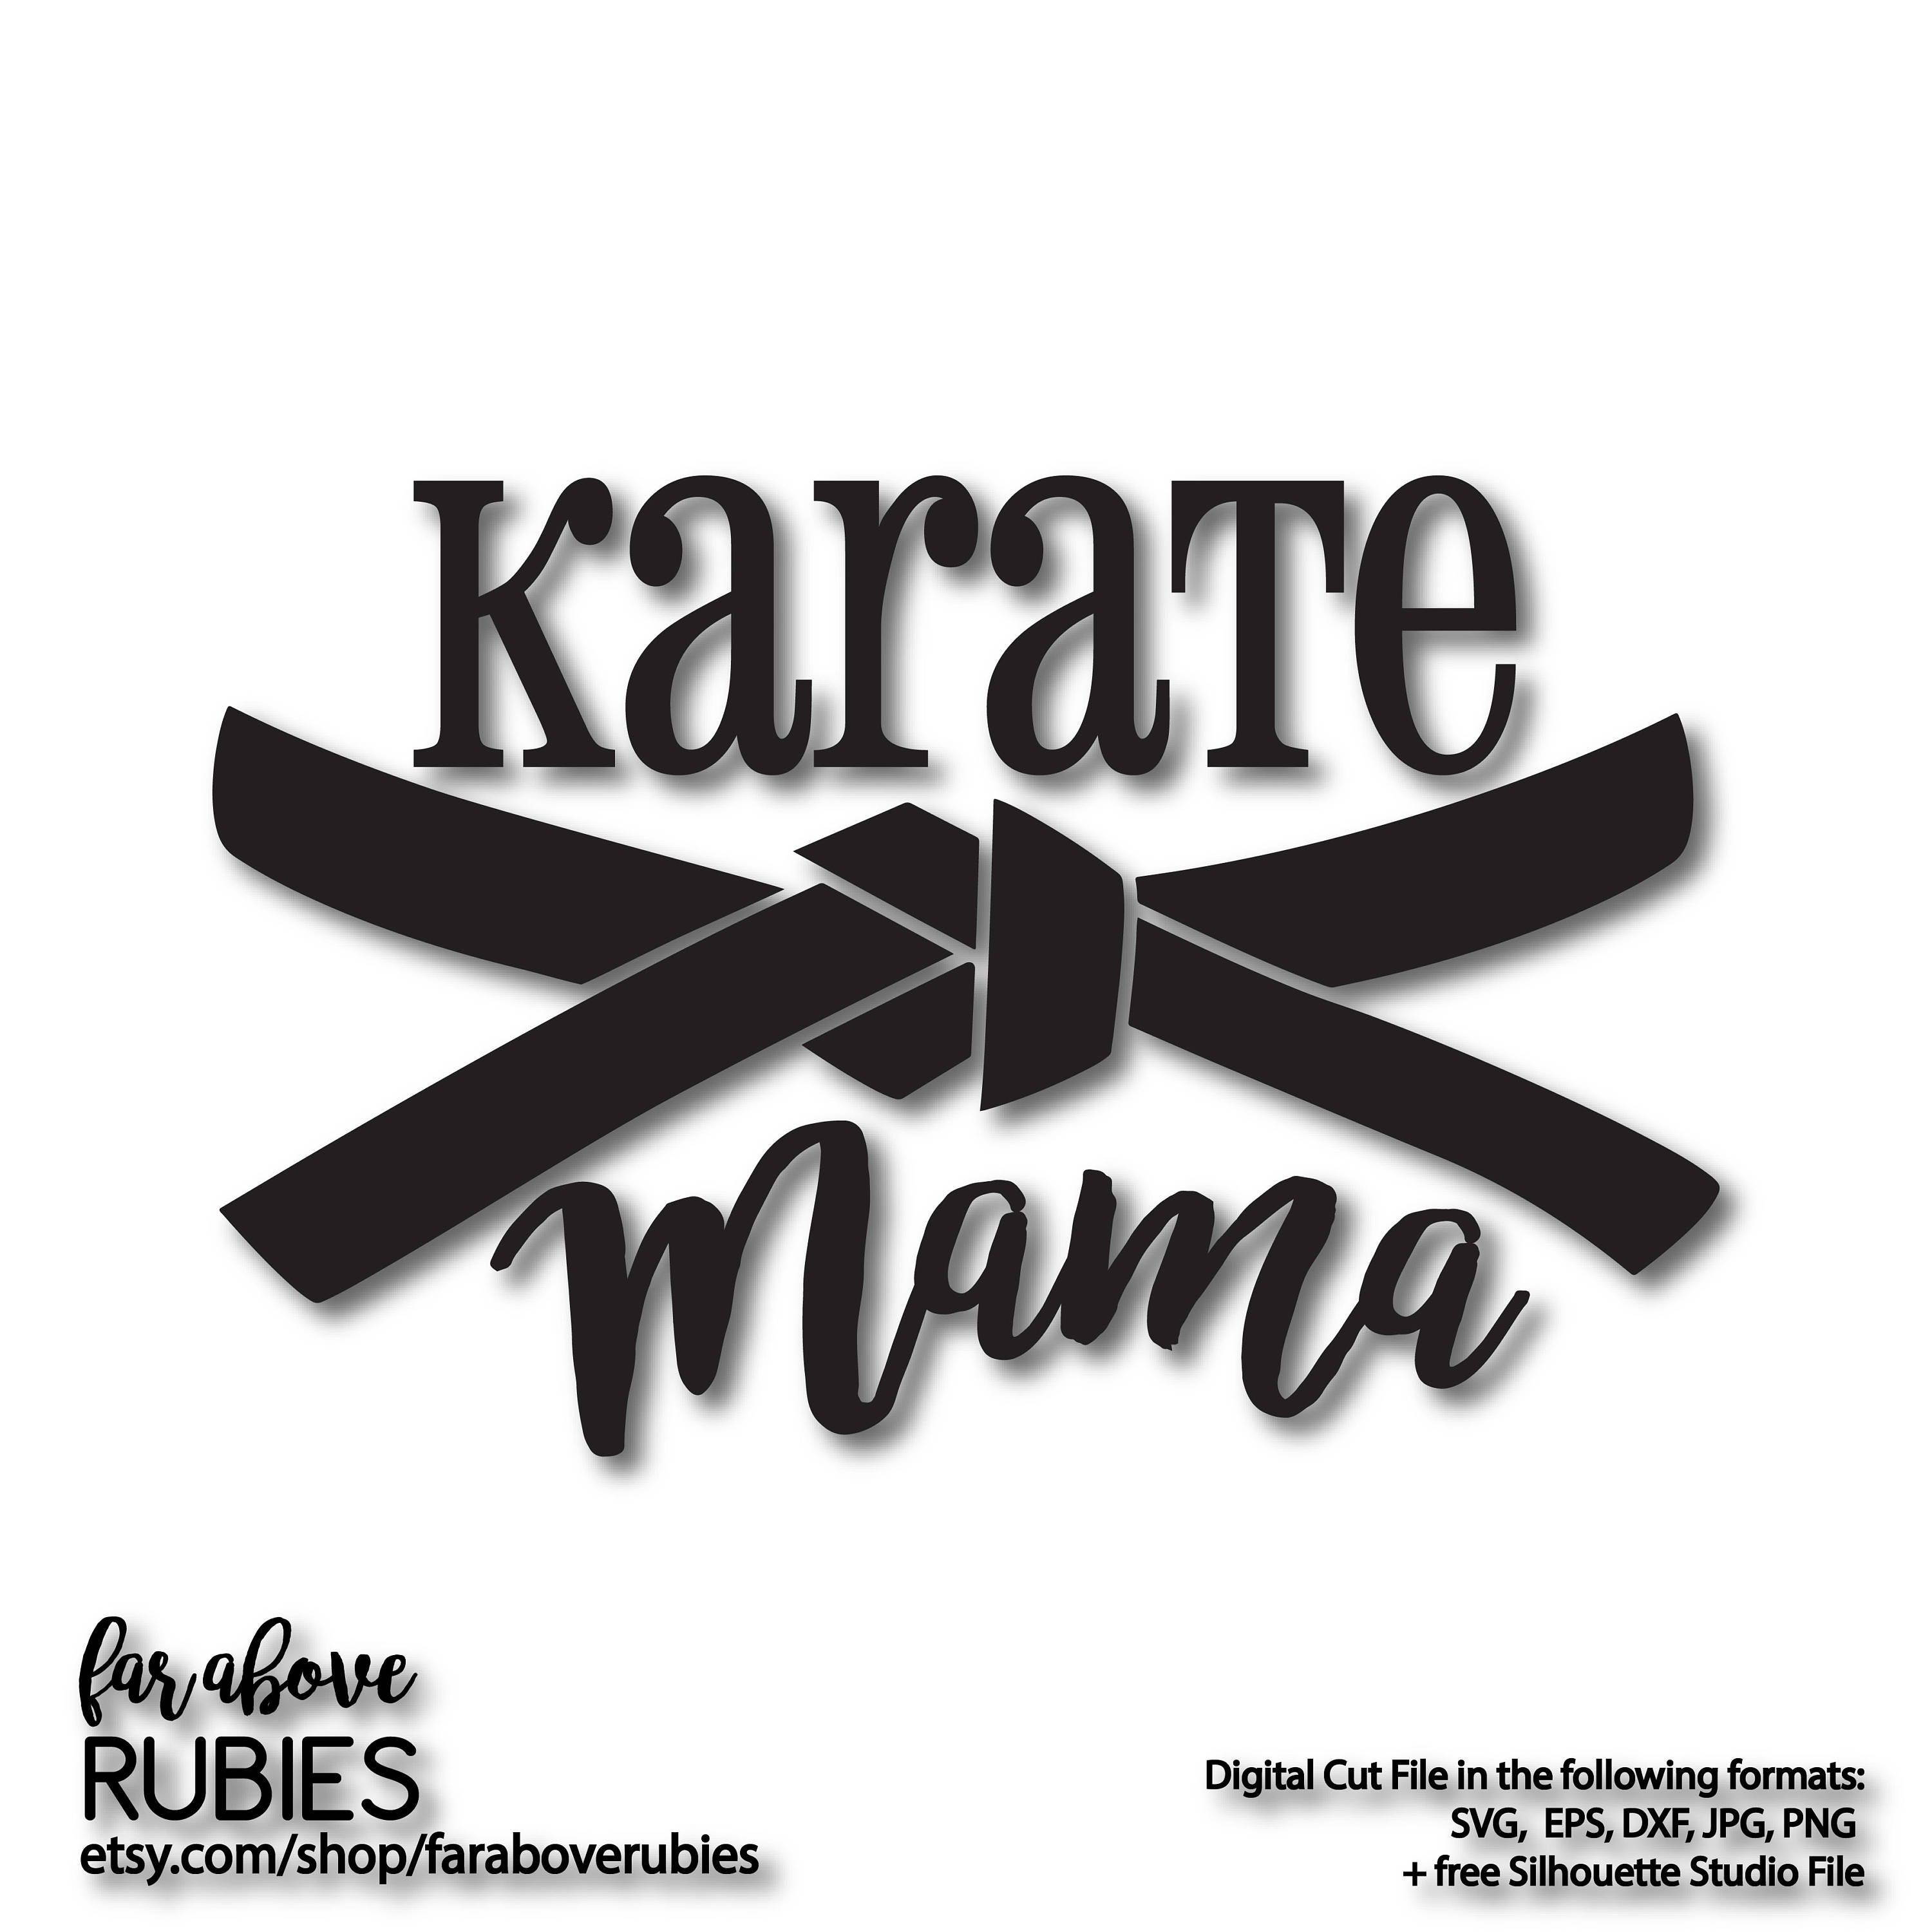 Download Karate Mama with Karate Belt SVG EPS dxf png jpg digital